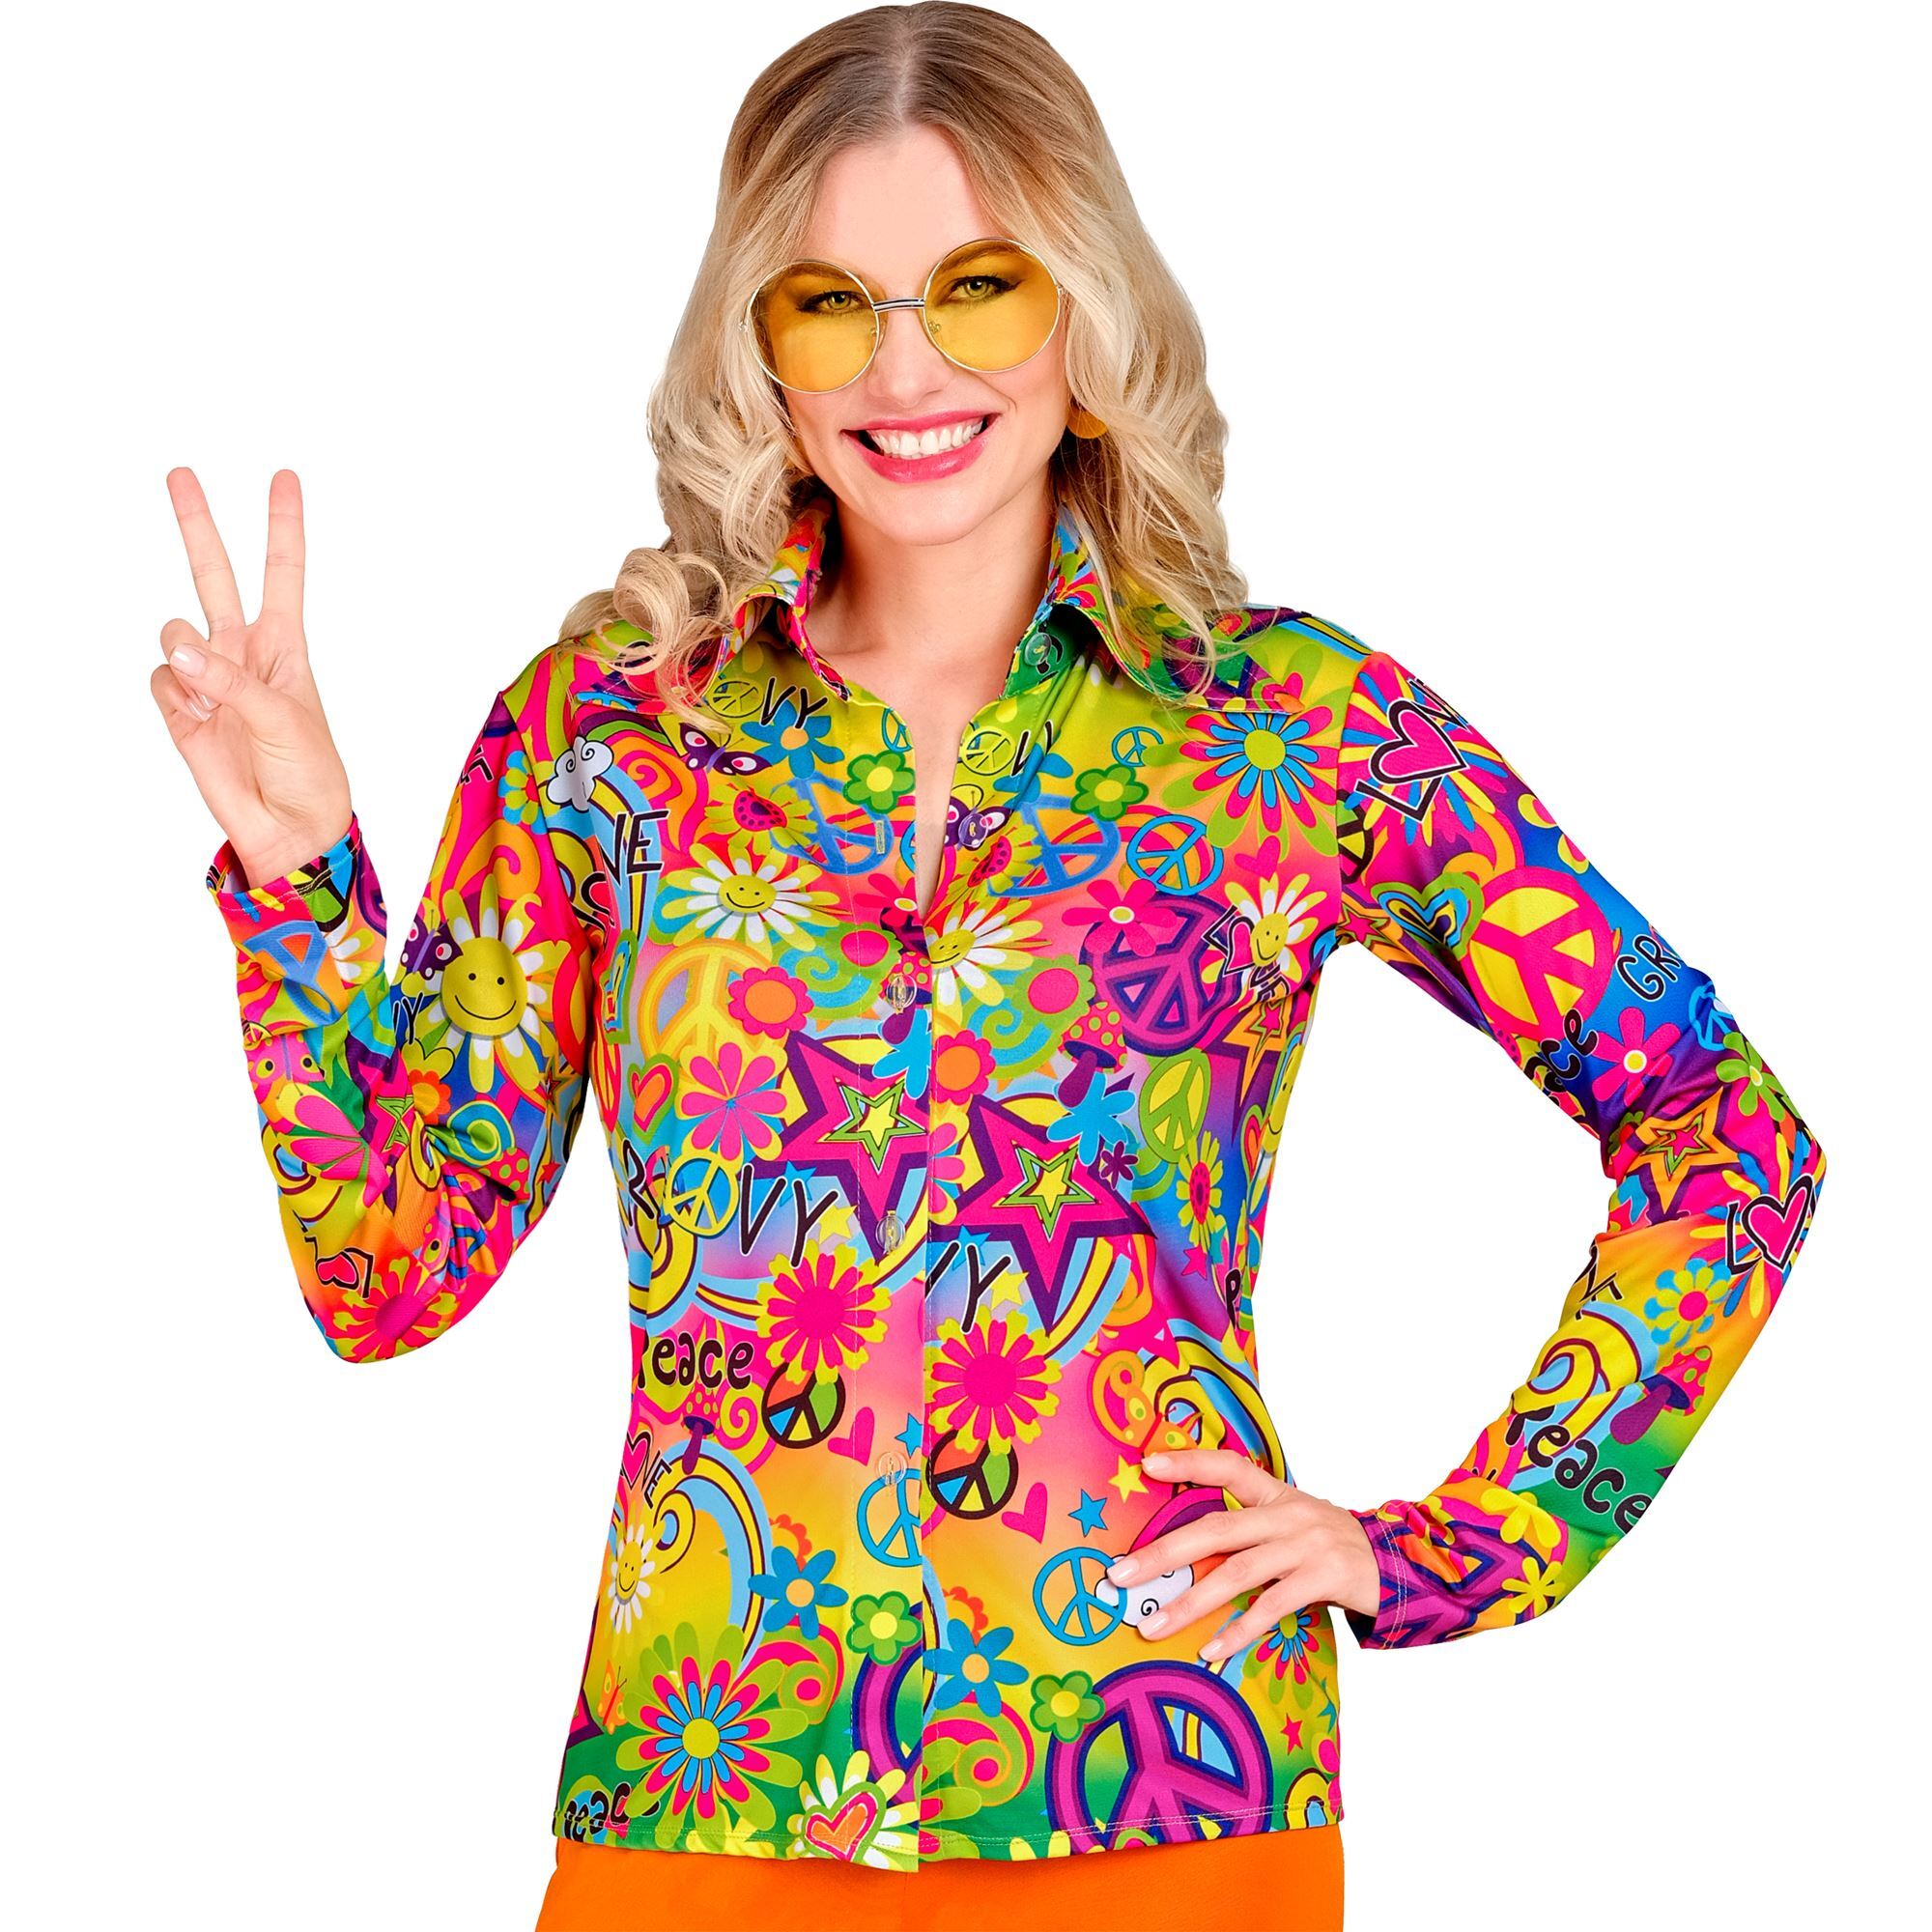 Stralend in de sixties fleurige peace & love blouse voor dames  perfect voor verkleedplezier